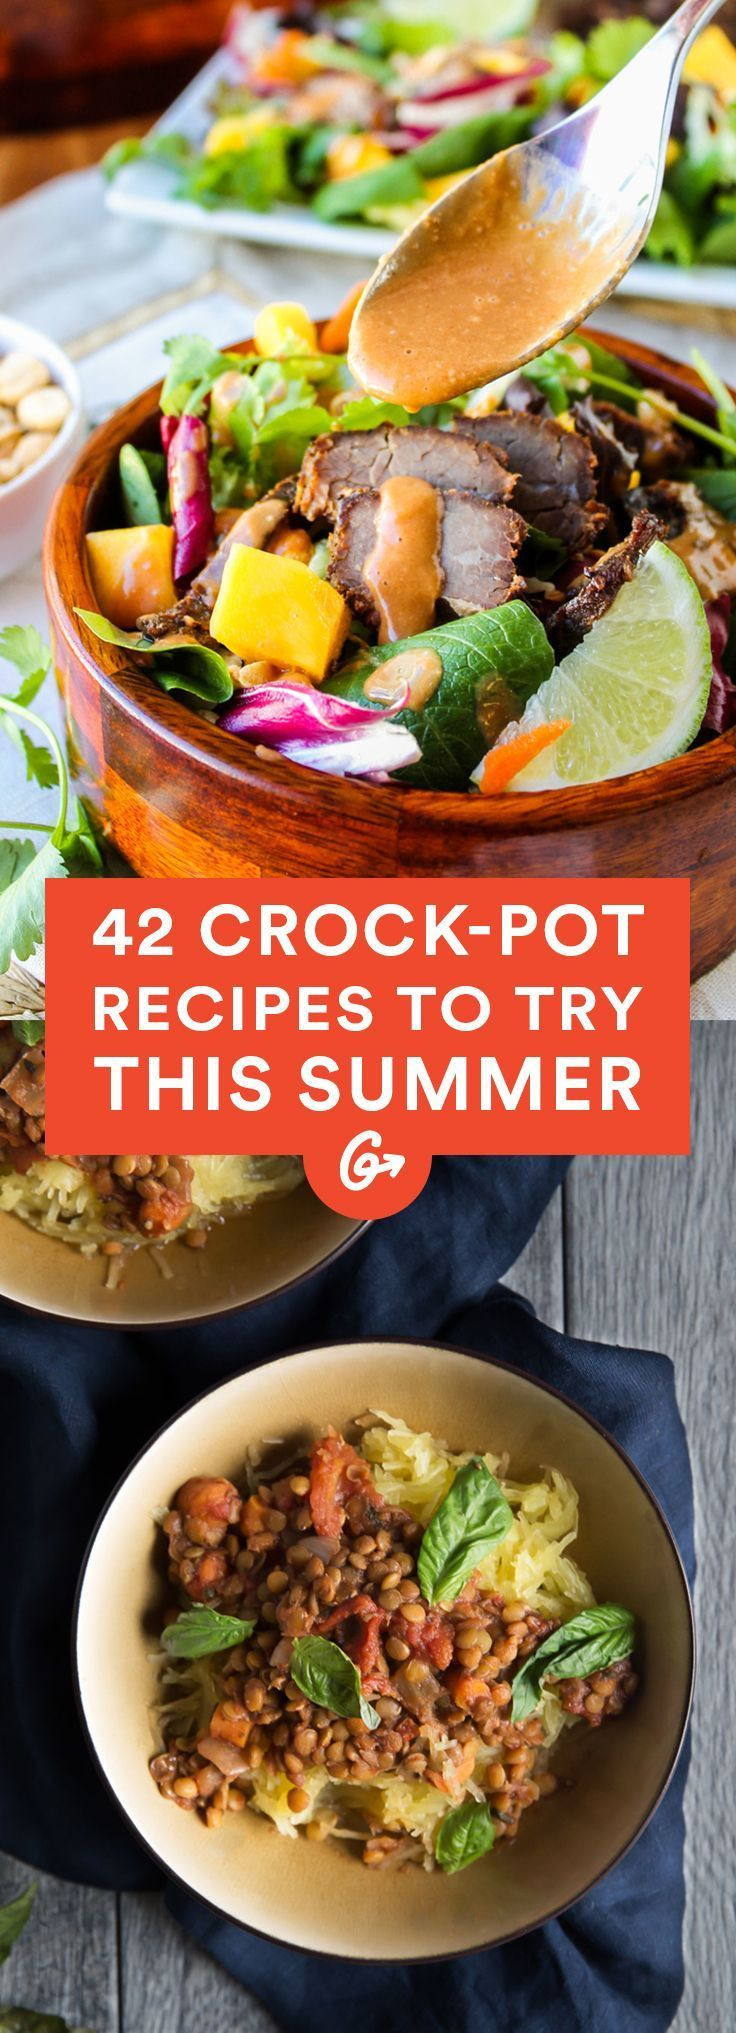 Summer Crock Pot Dinners
 100 Summer Crock Pot Recipes on Pinterest